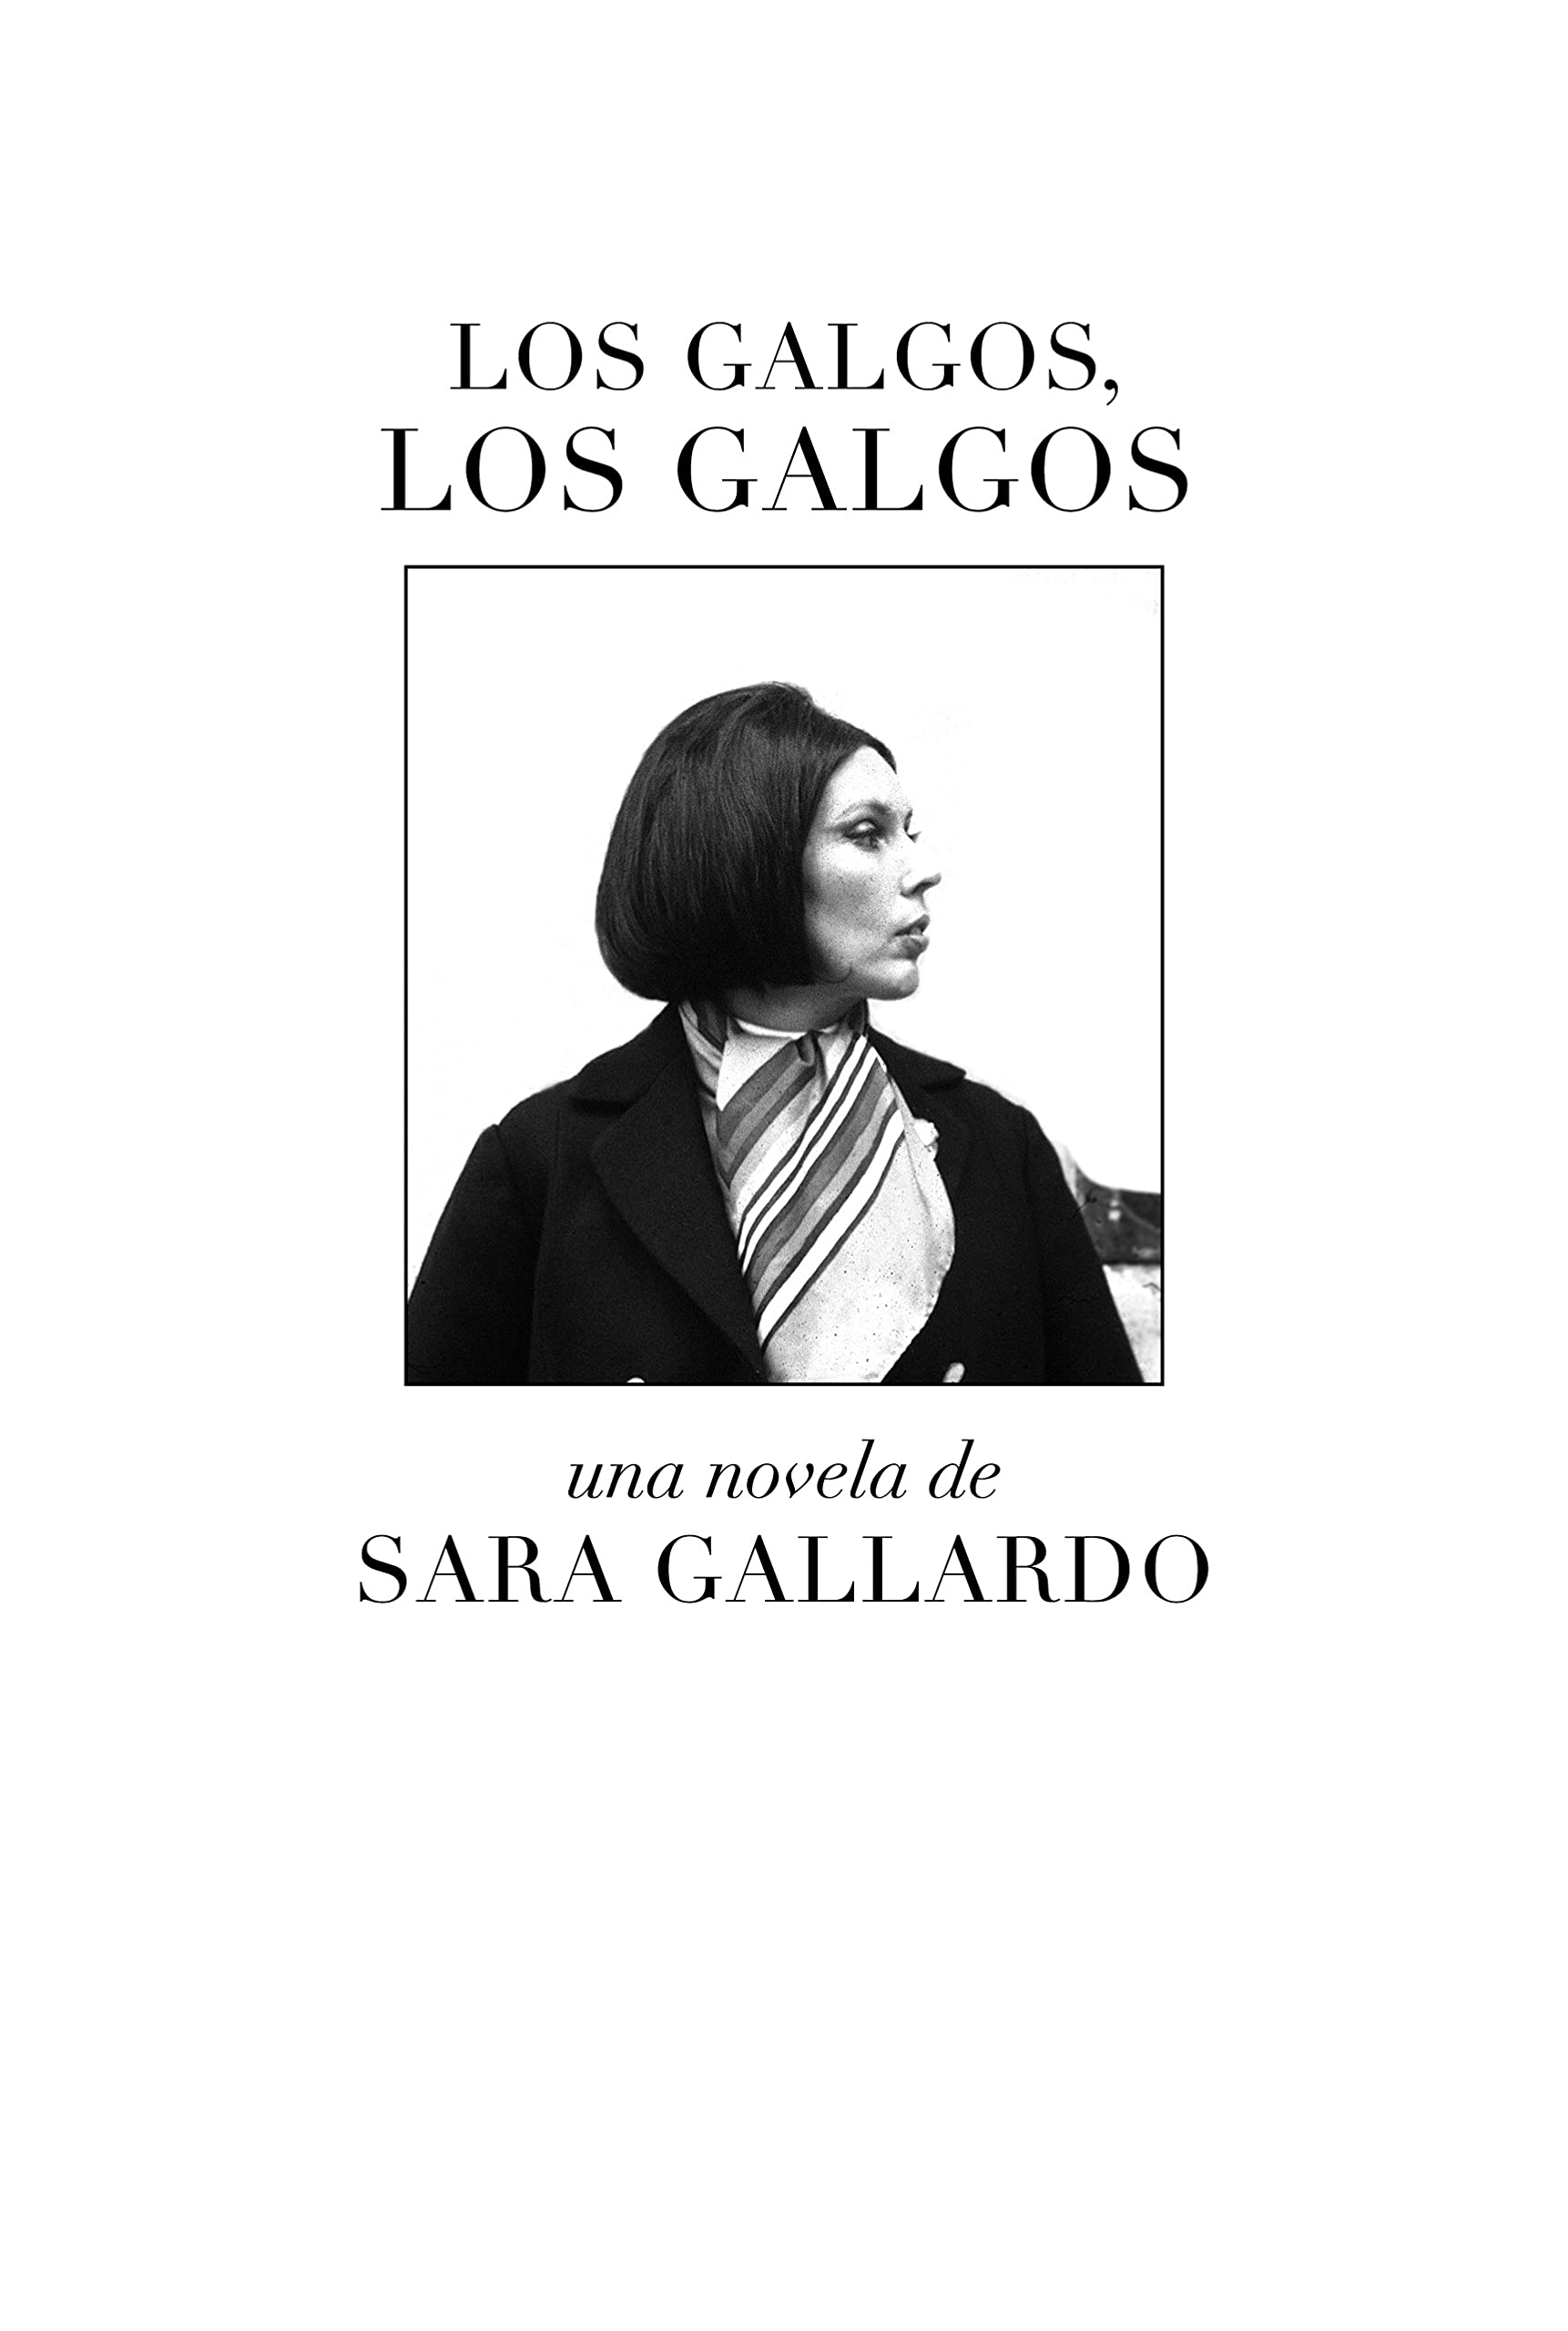 Zenda recomienda: Los galgos, los galgos, de Sara Gallardo